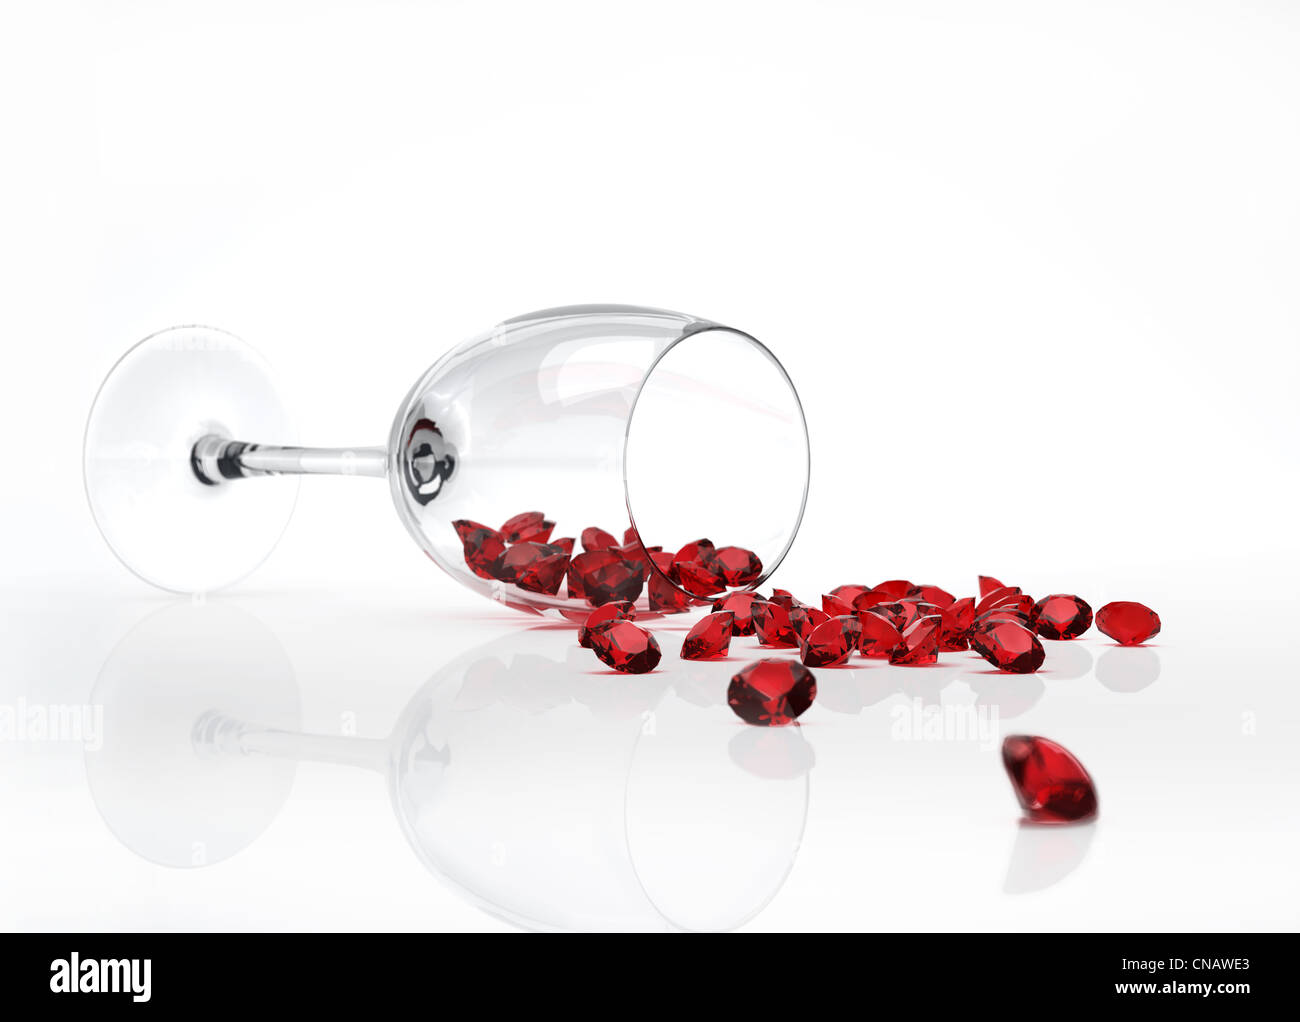 Feltro di vetro verso il basso, con molti i diamanti rossi è venuto fuori di essa, invece di vino. Foto Stock